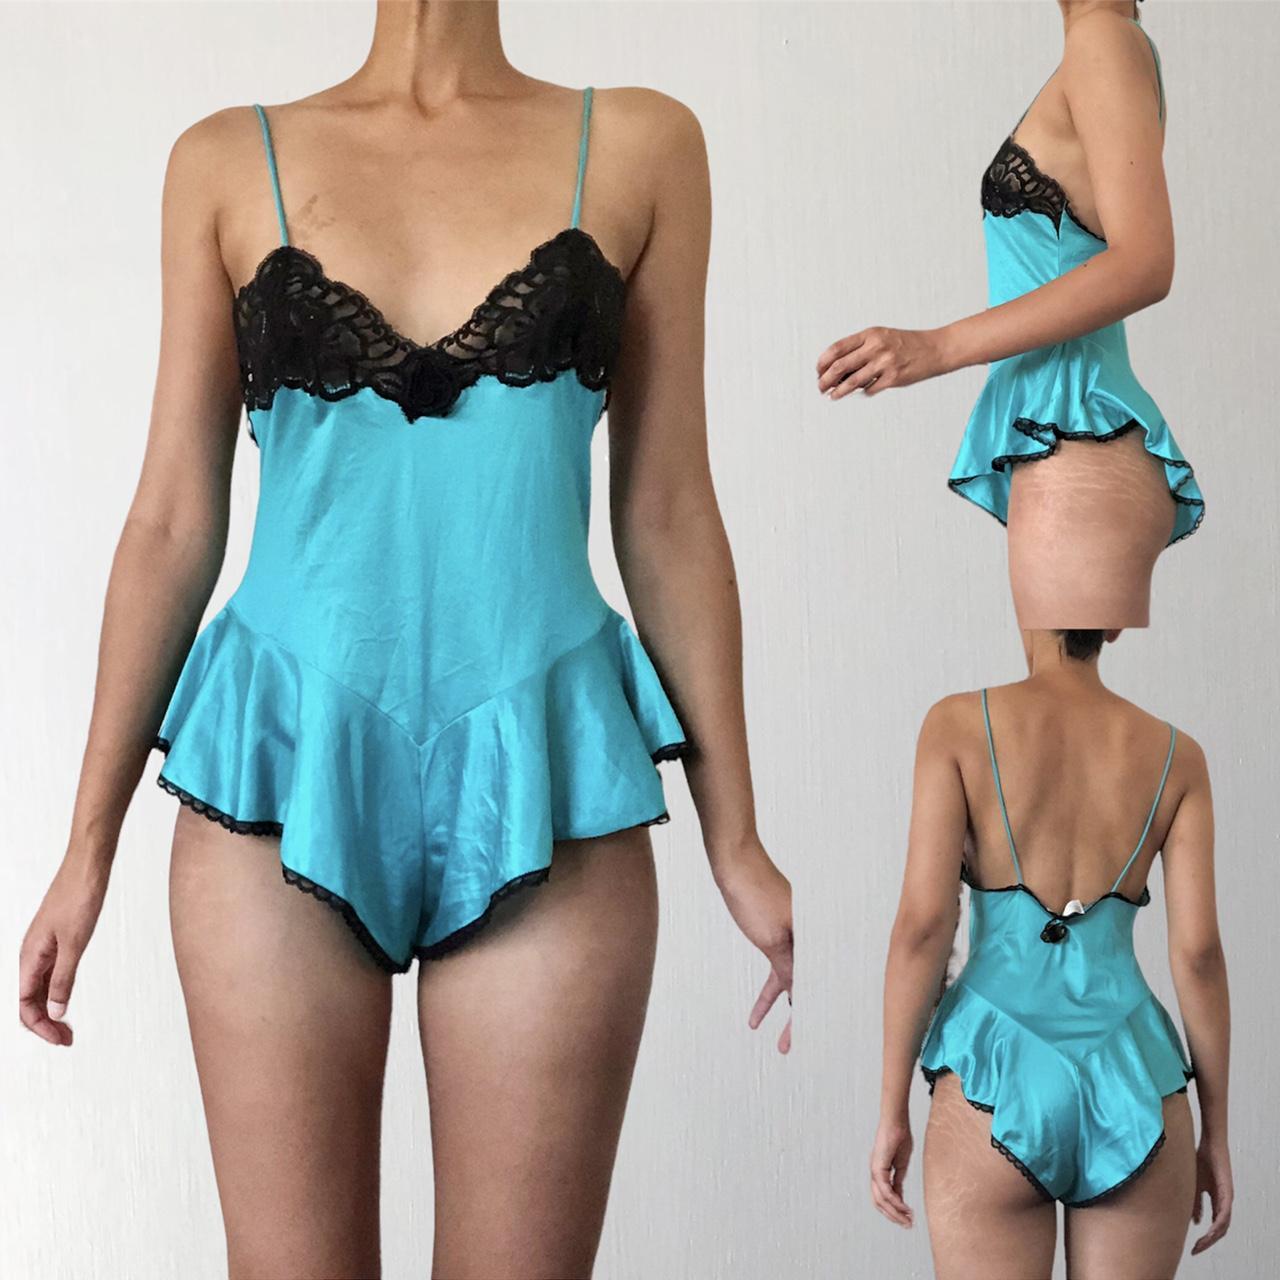 Vintage lingerie bodysuit , flexees type , by Cupid - Depop